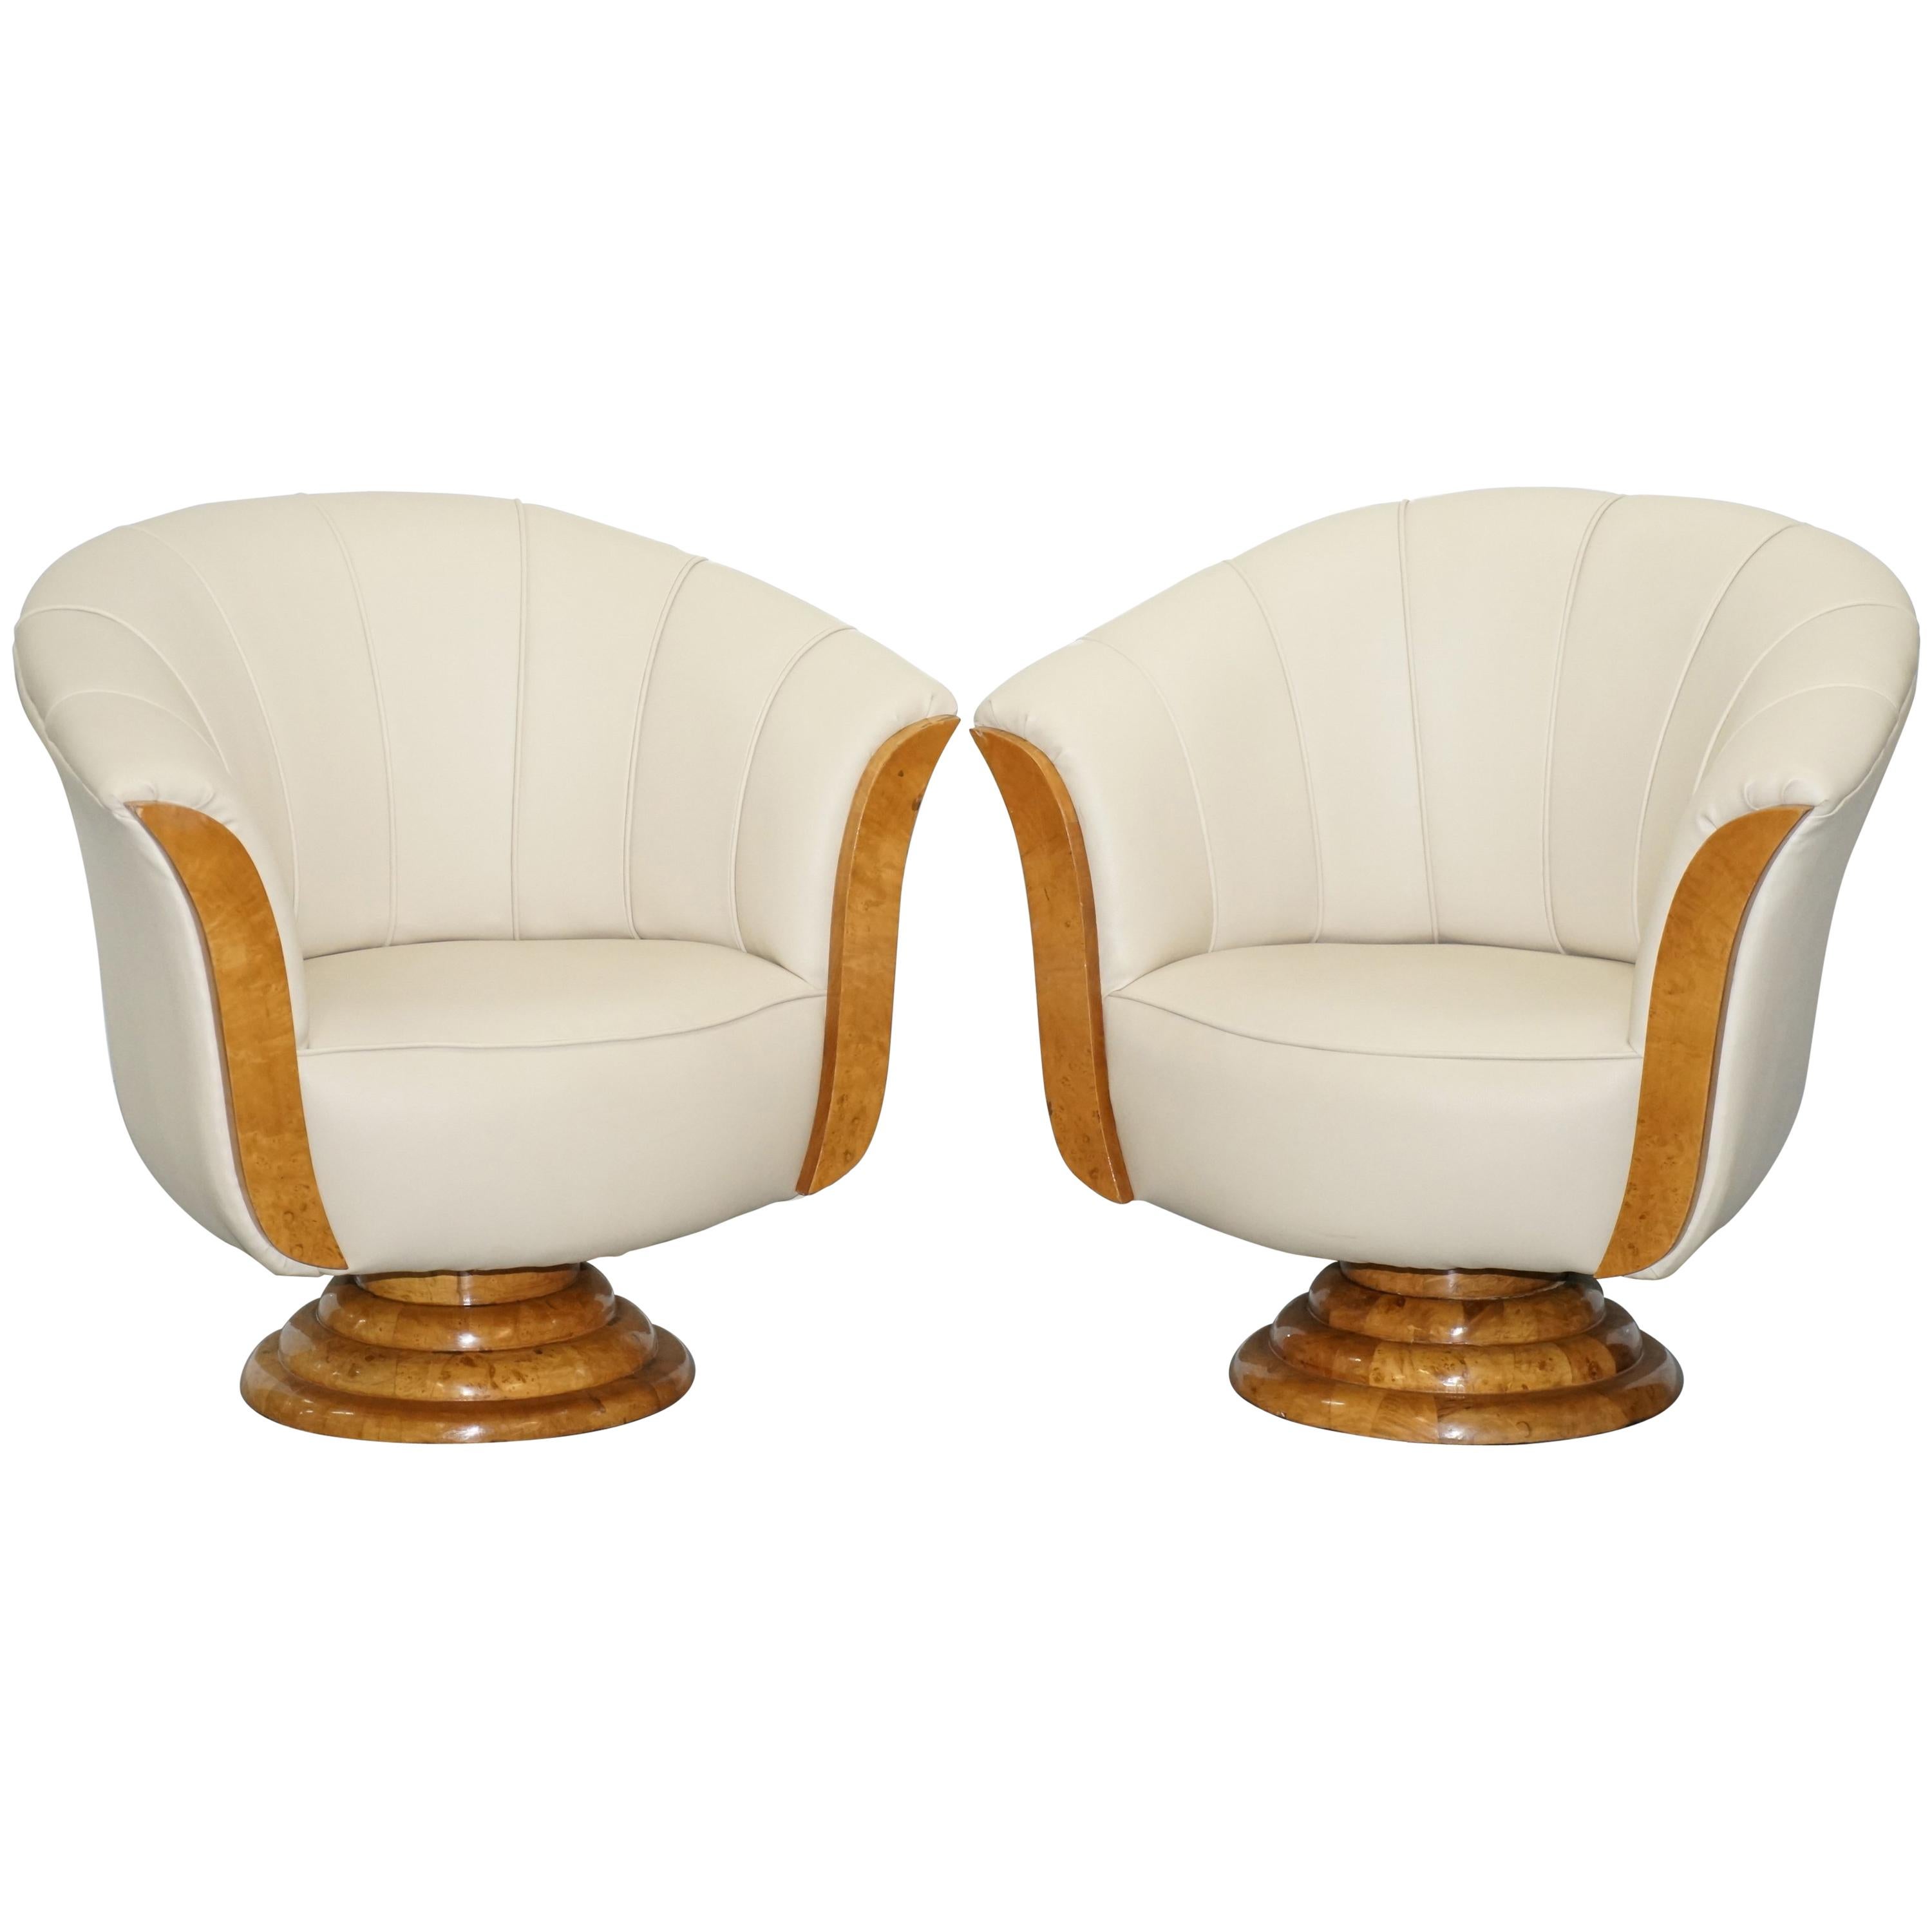 Pair of Original Restored Art Deco Tulip Armchairs Cream Leather Maple